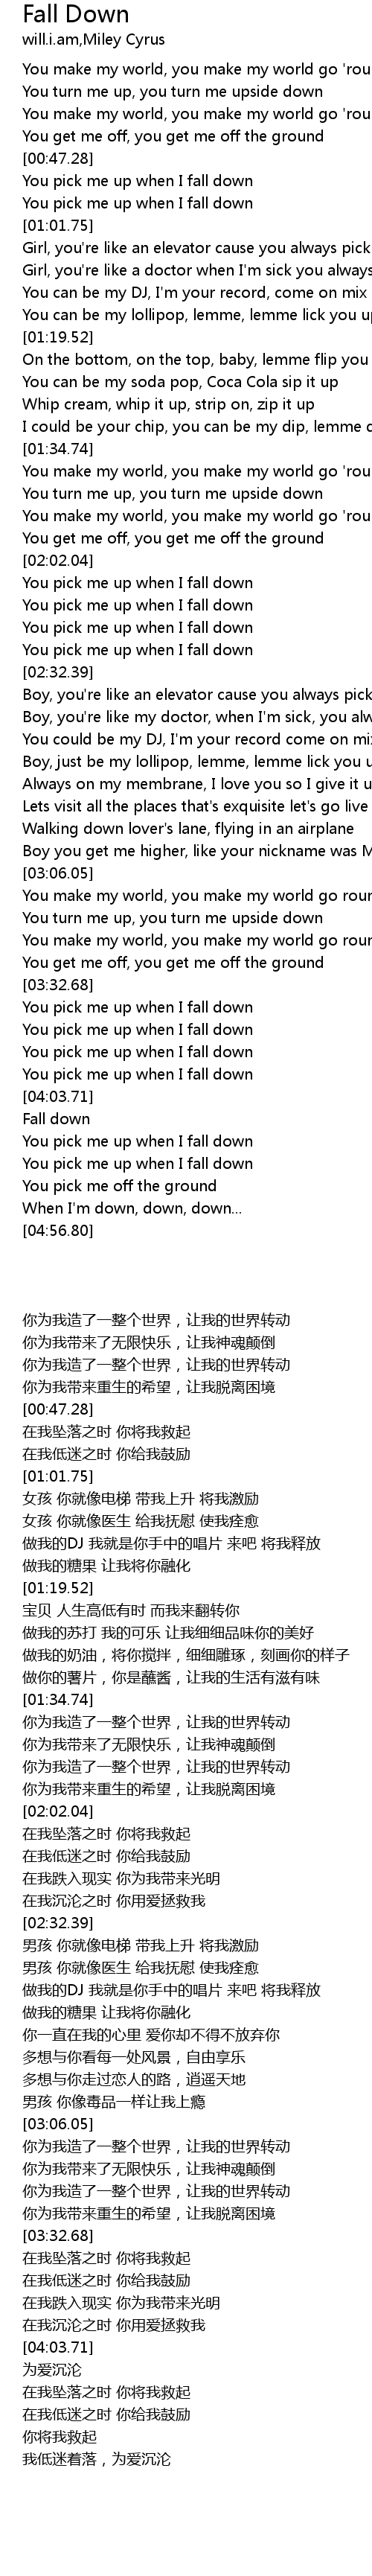 Fall Down Lyrics Follow Lyrics